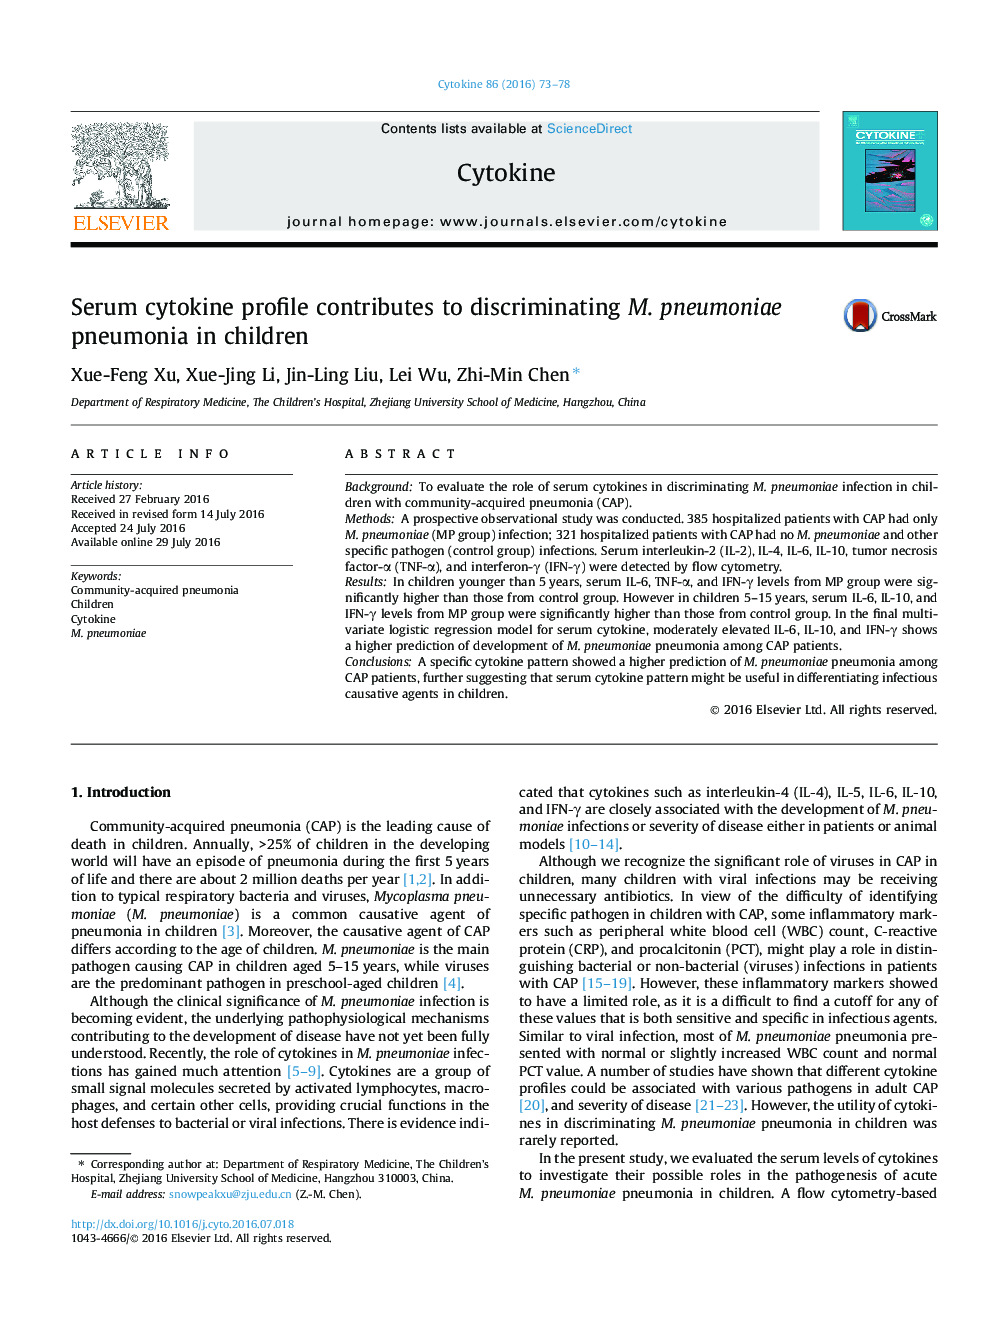 Serum cytokine profile contributes to discriminating M. pneumoniae pneumonia in children